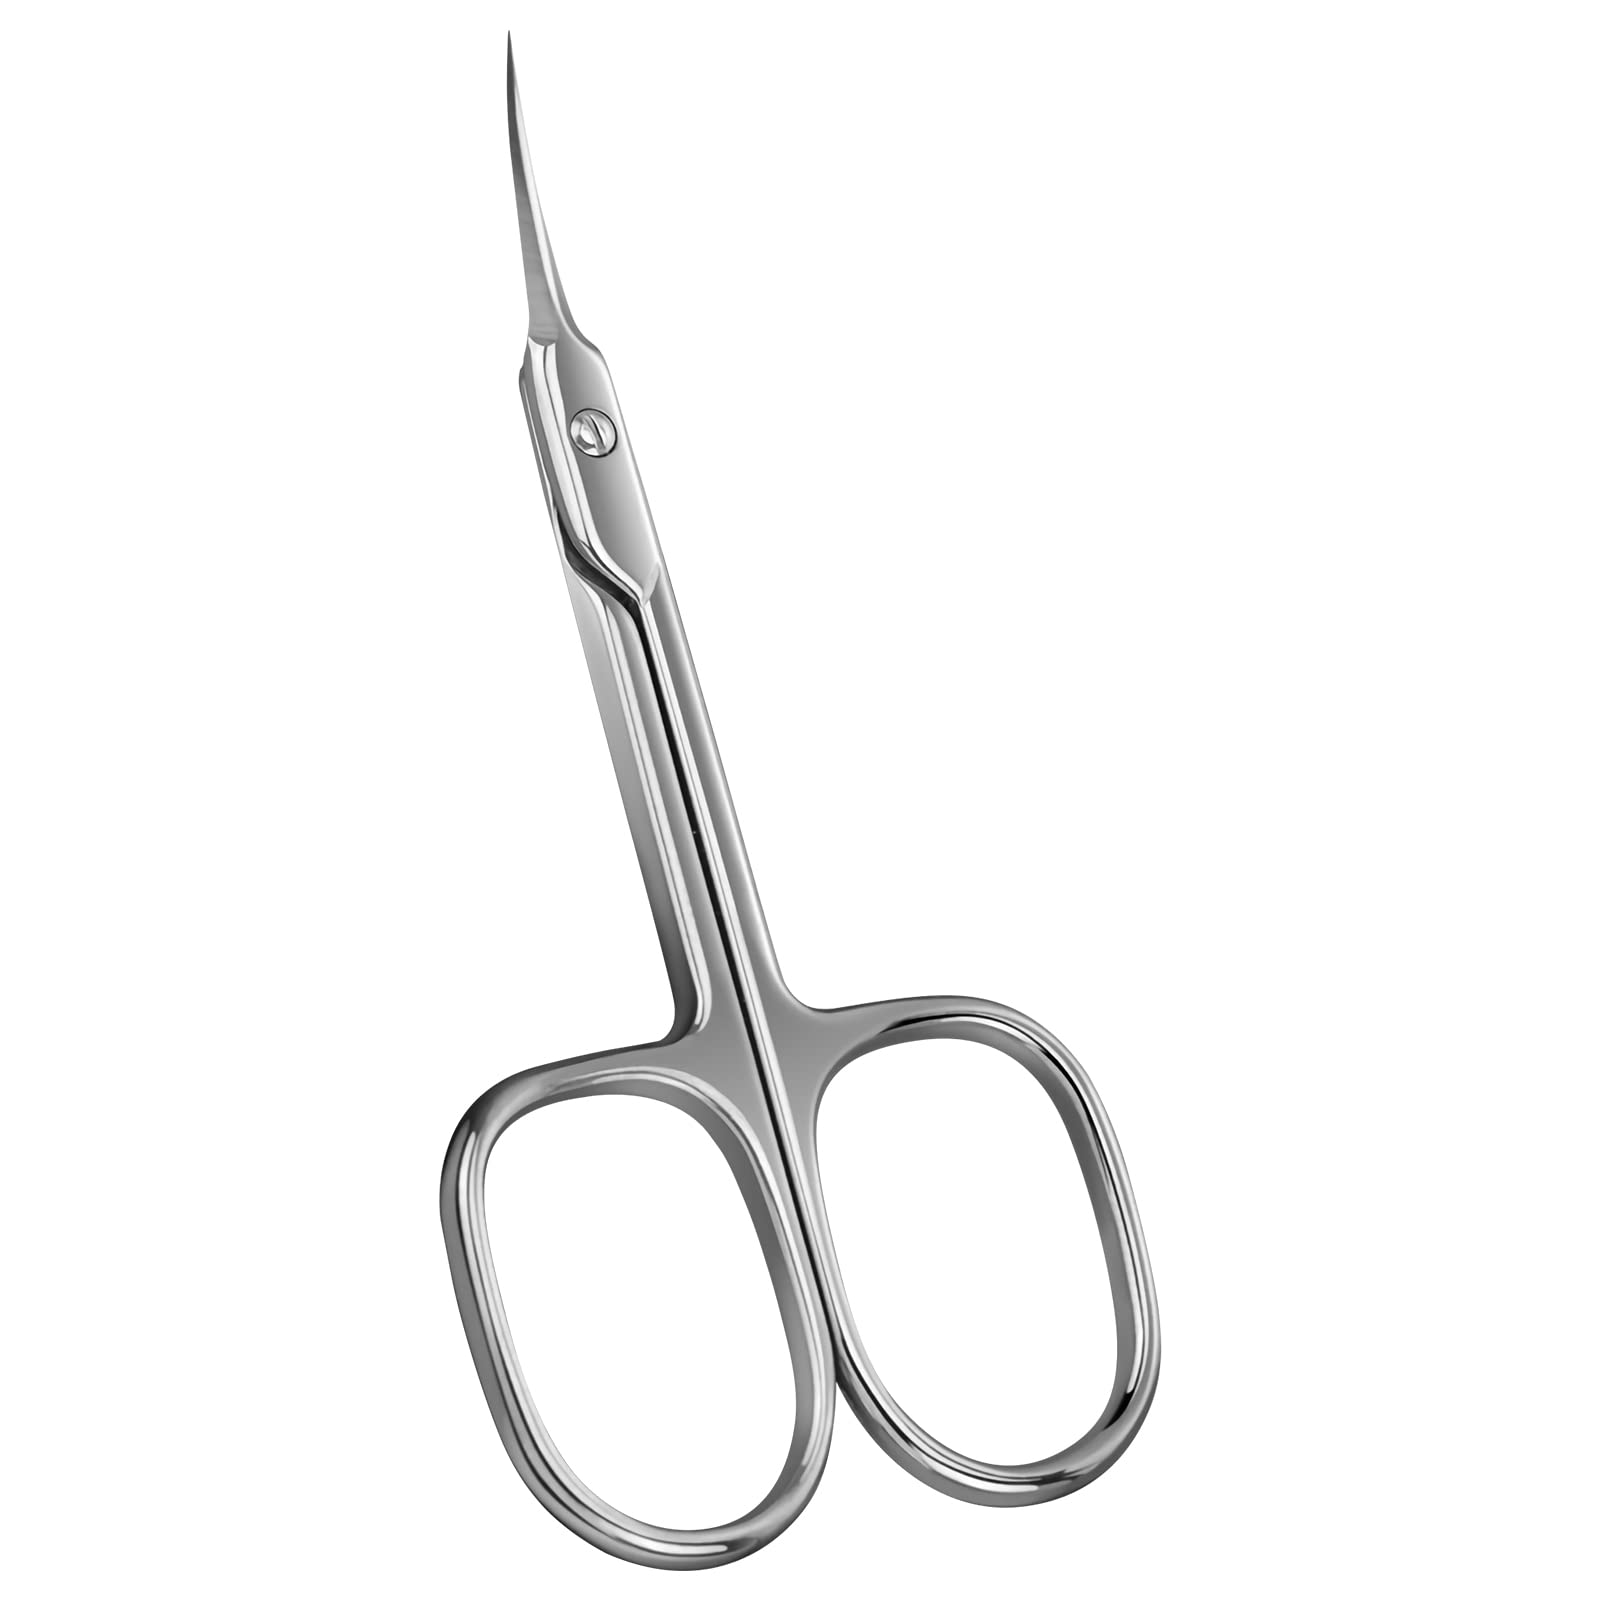 CGBE Cuticle Scissors Extra Fine Curved Blade, Super Slim Scissors